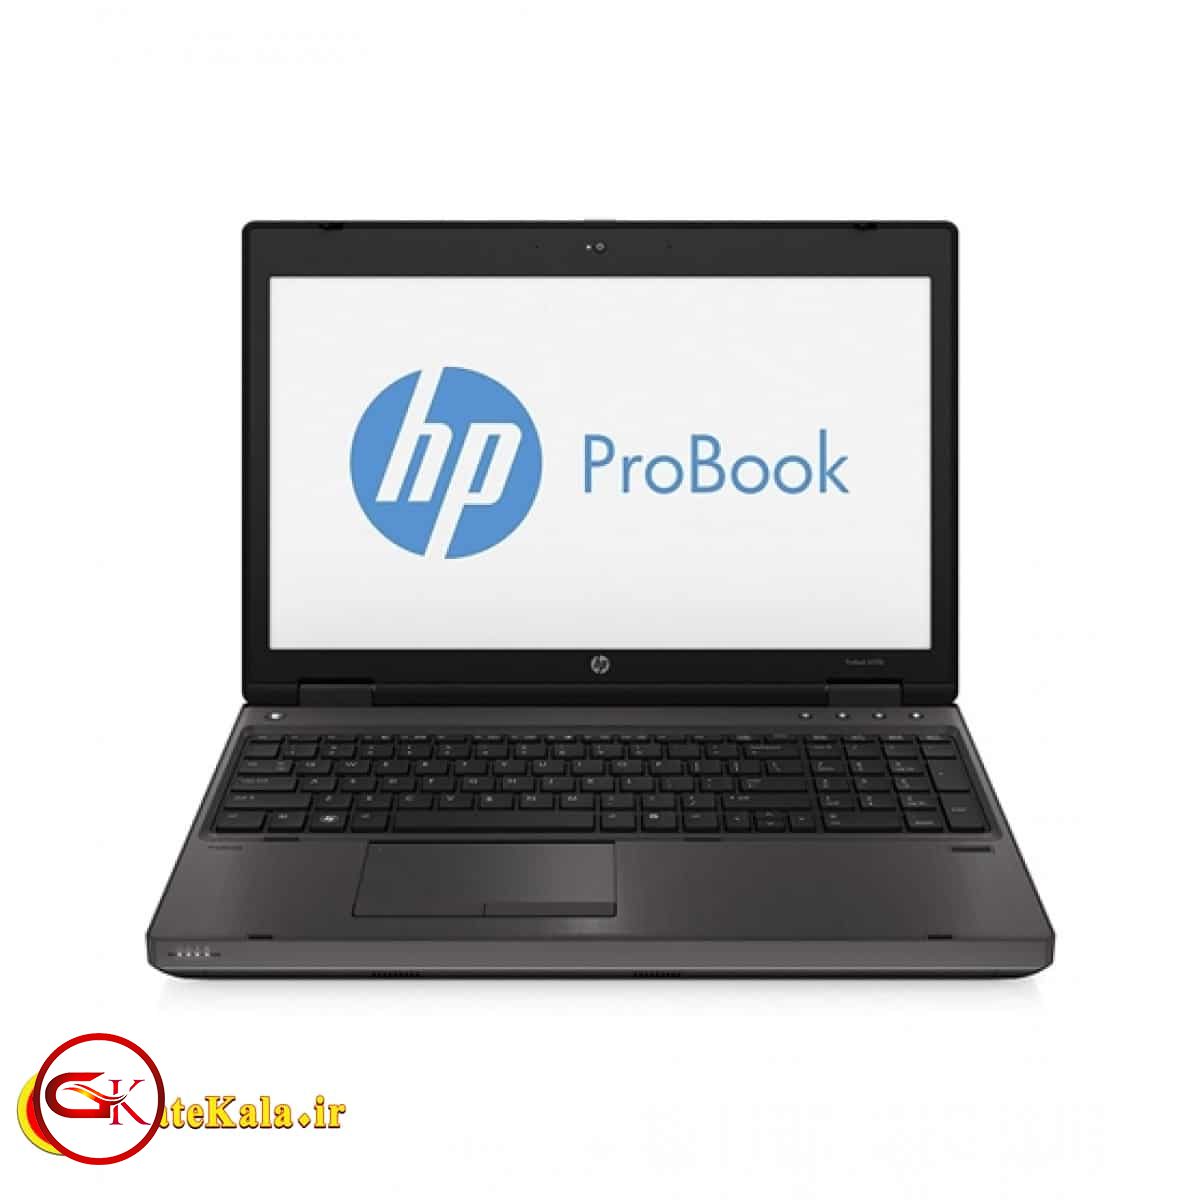 بررسی لپ تاپ HP ProBook 6450b